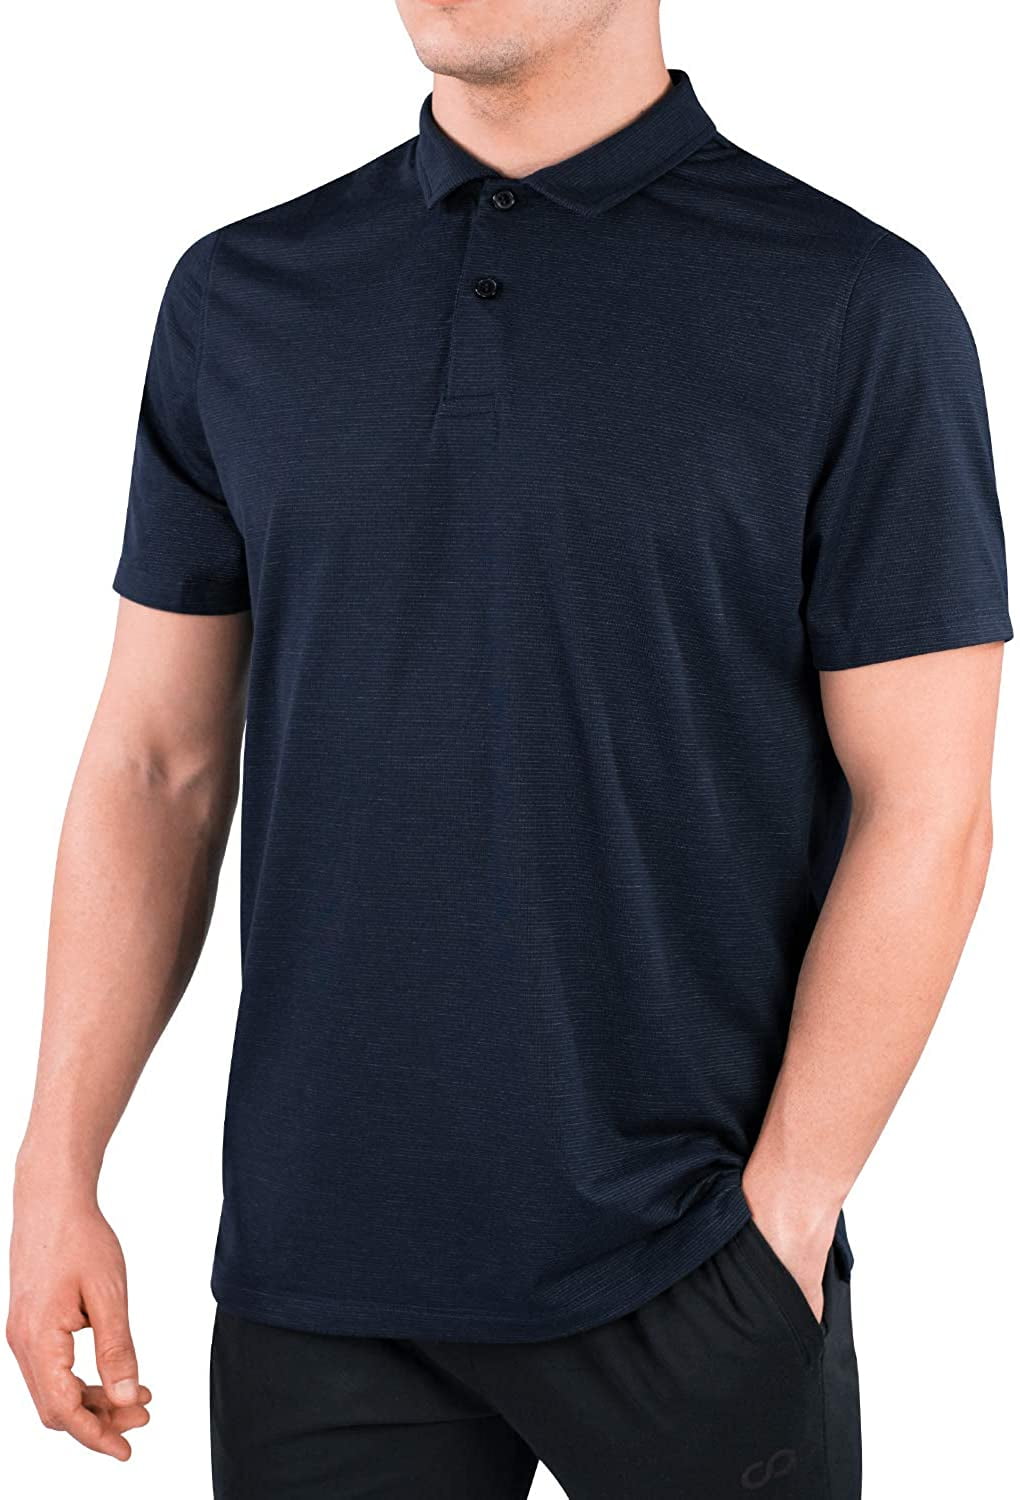 QUNTOYR Mens Short Sleeve Polo Tee Tyson-Foods Leisure Humor Gym Printed Shirts